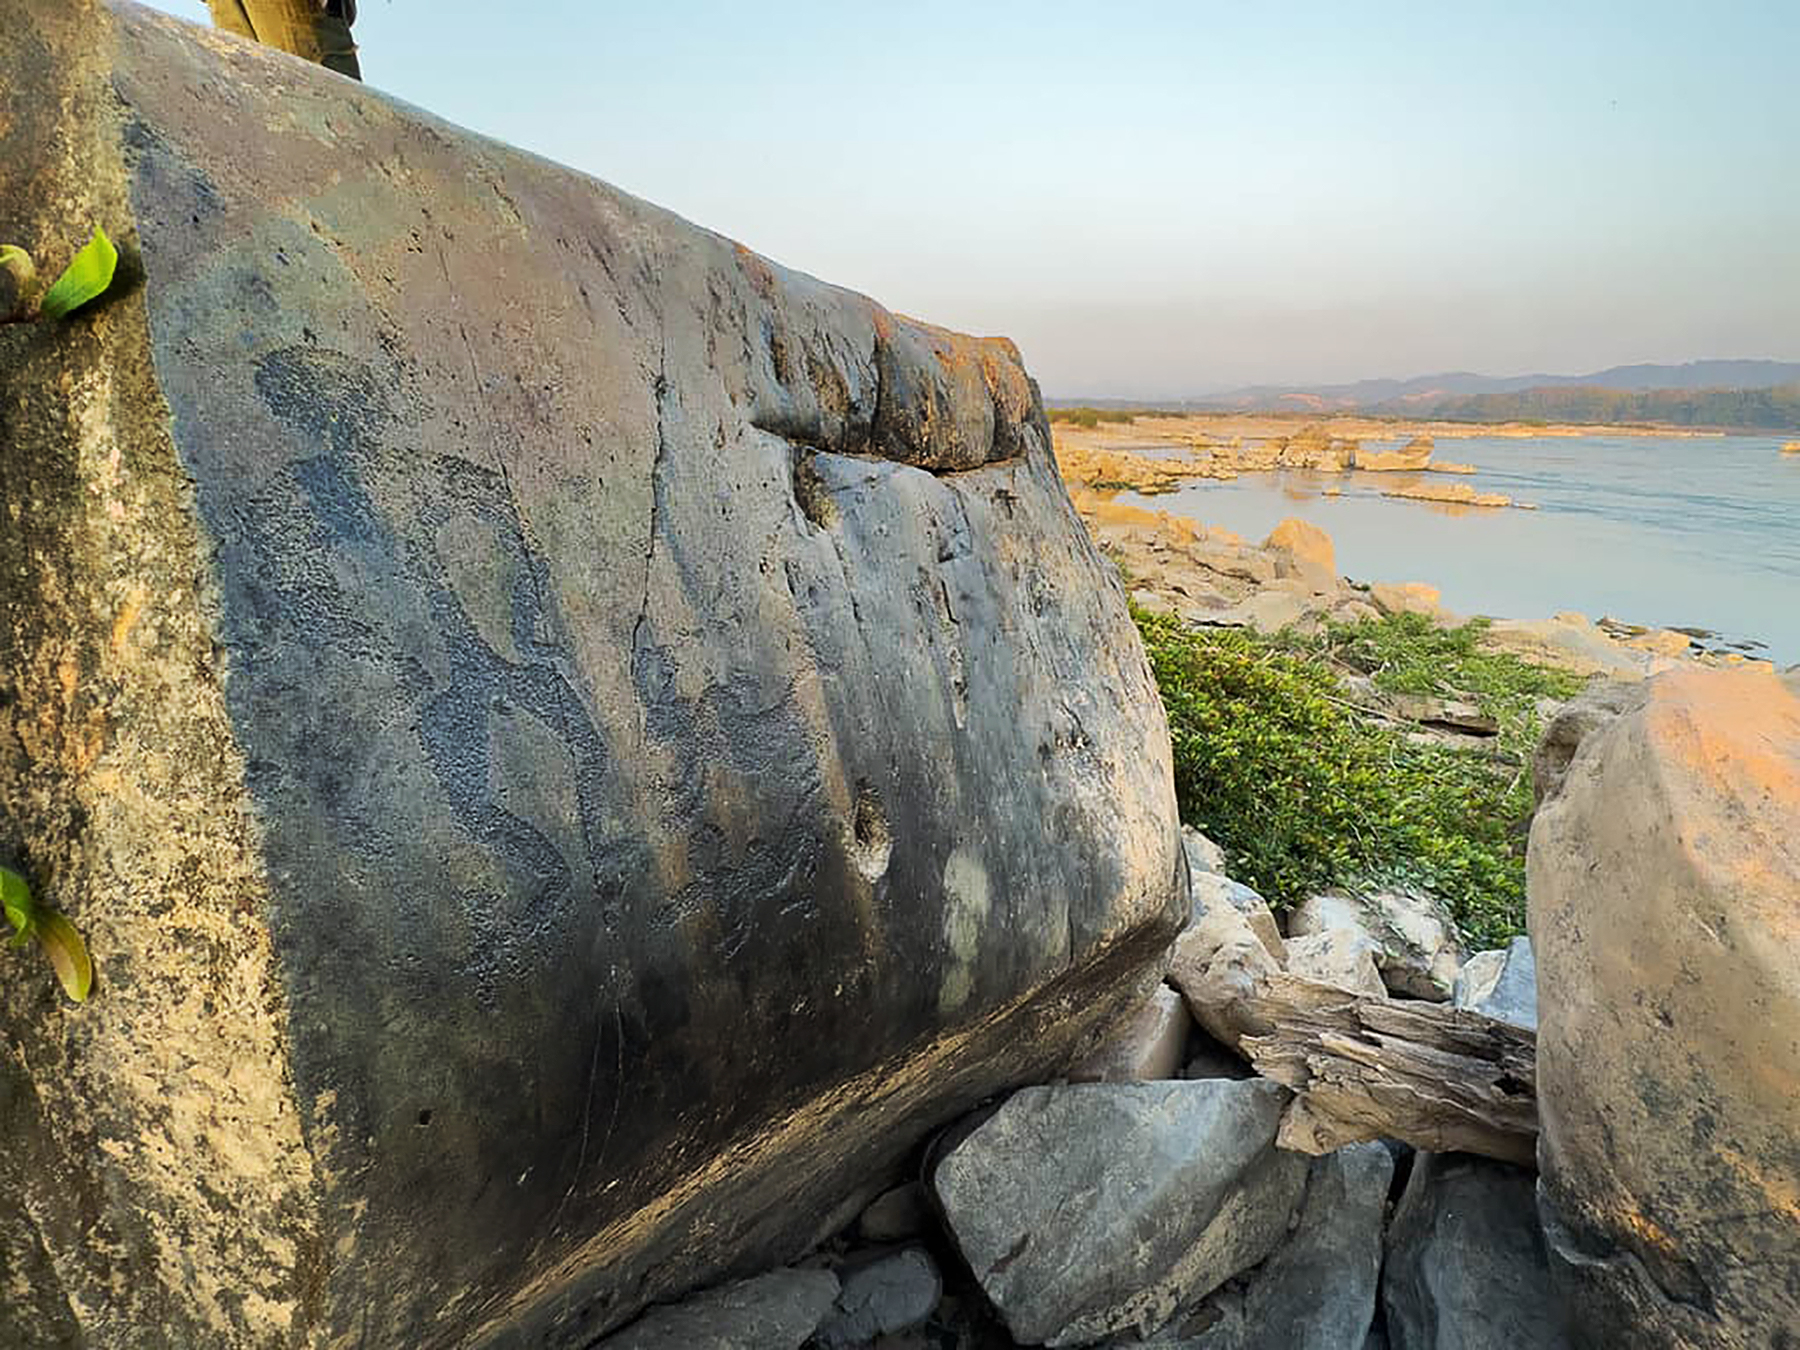 The rock art at Pak Lai, Sainyabuli province